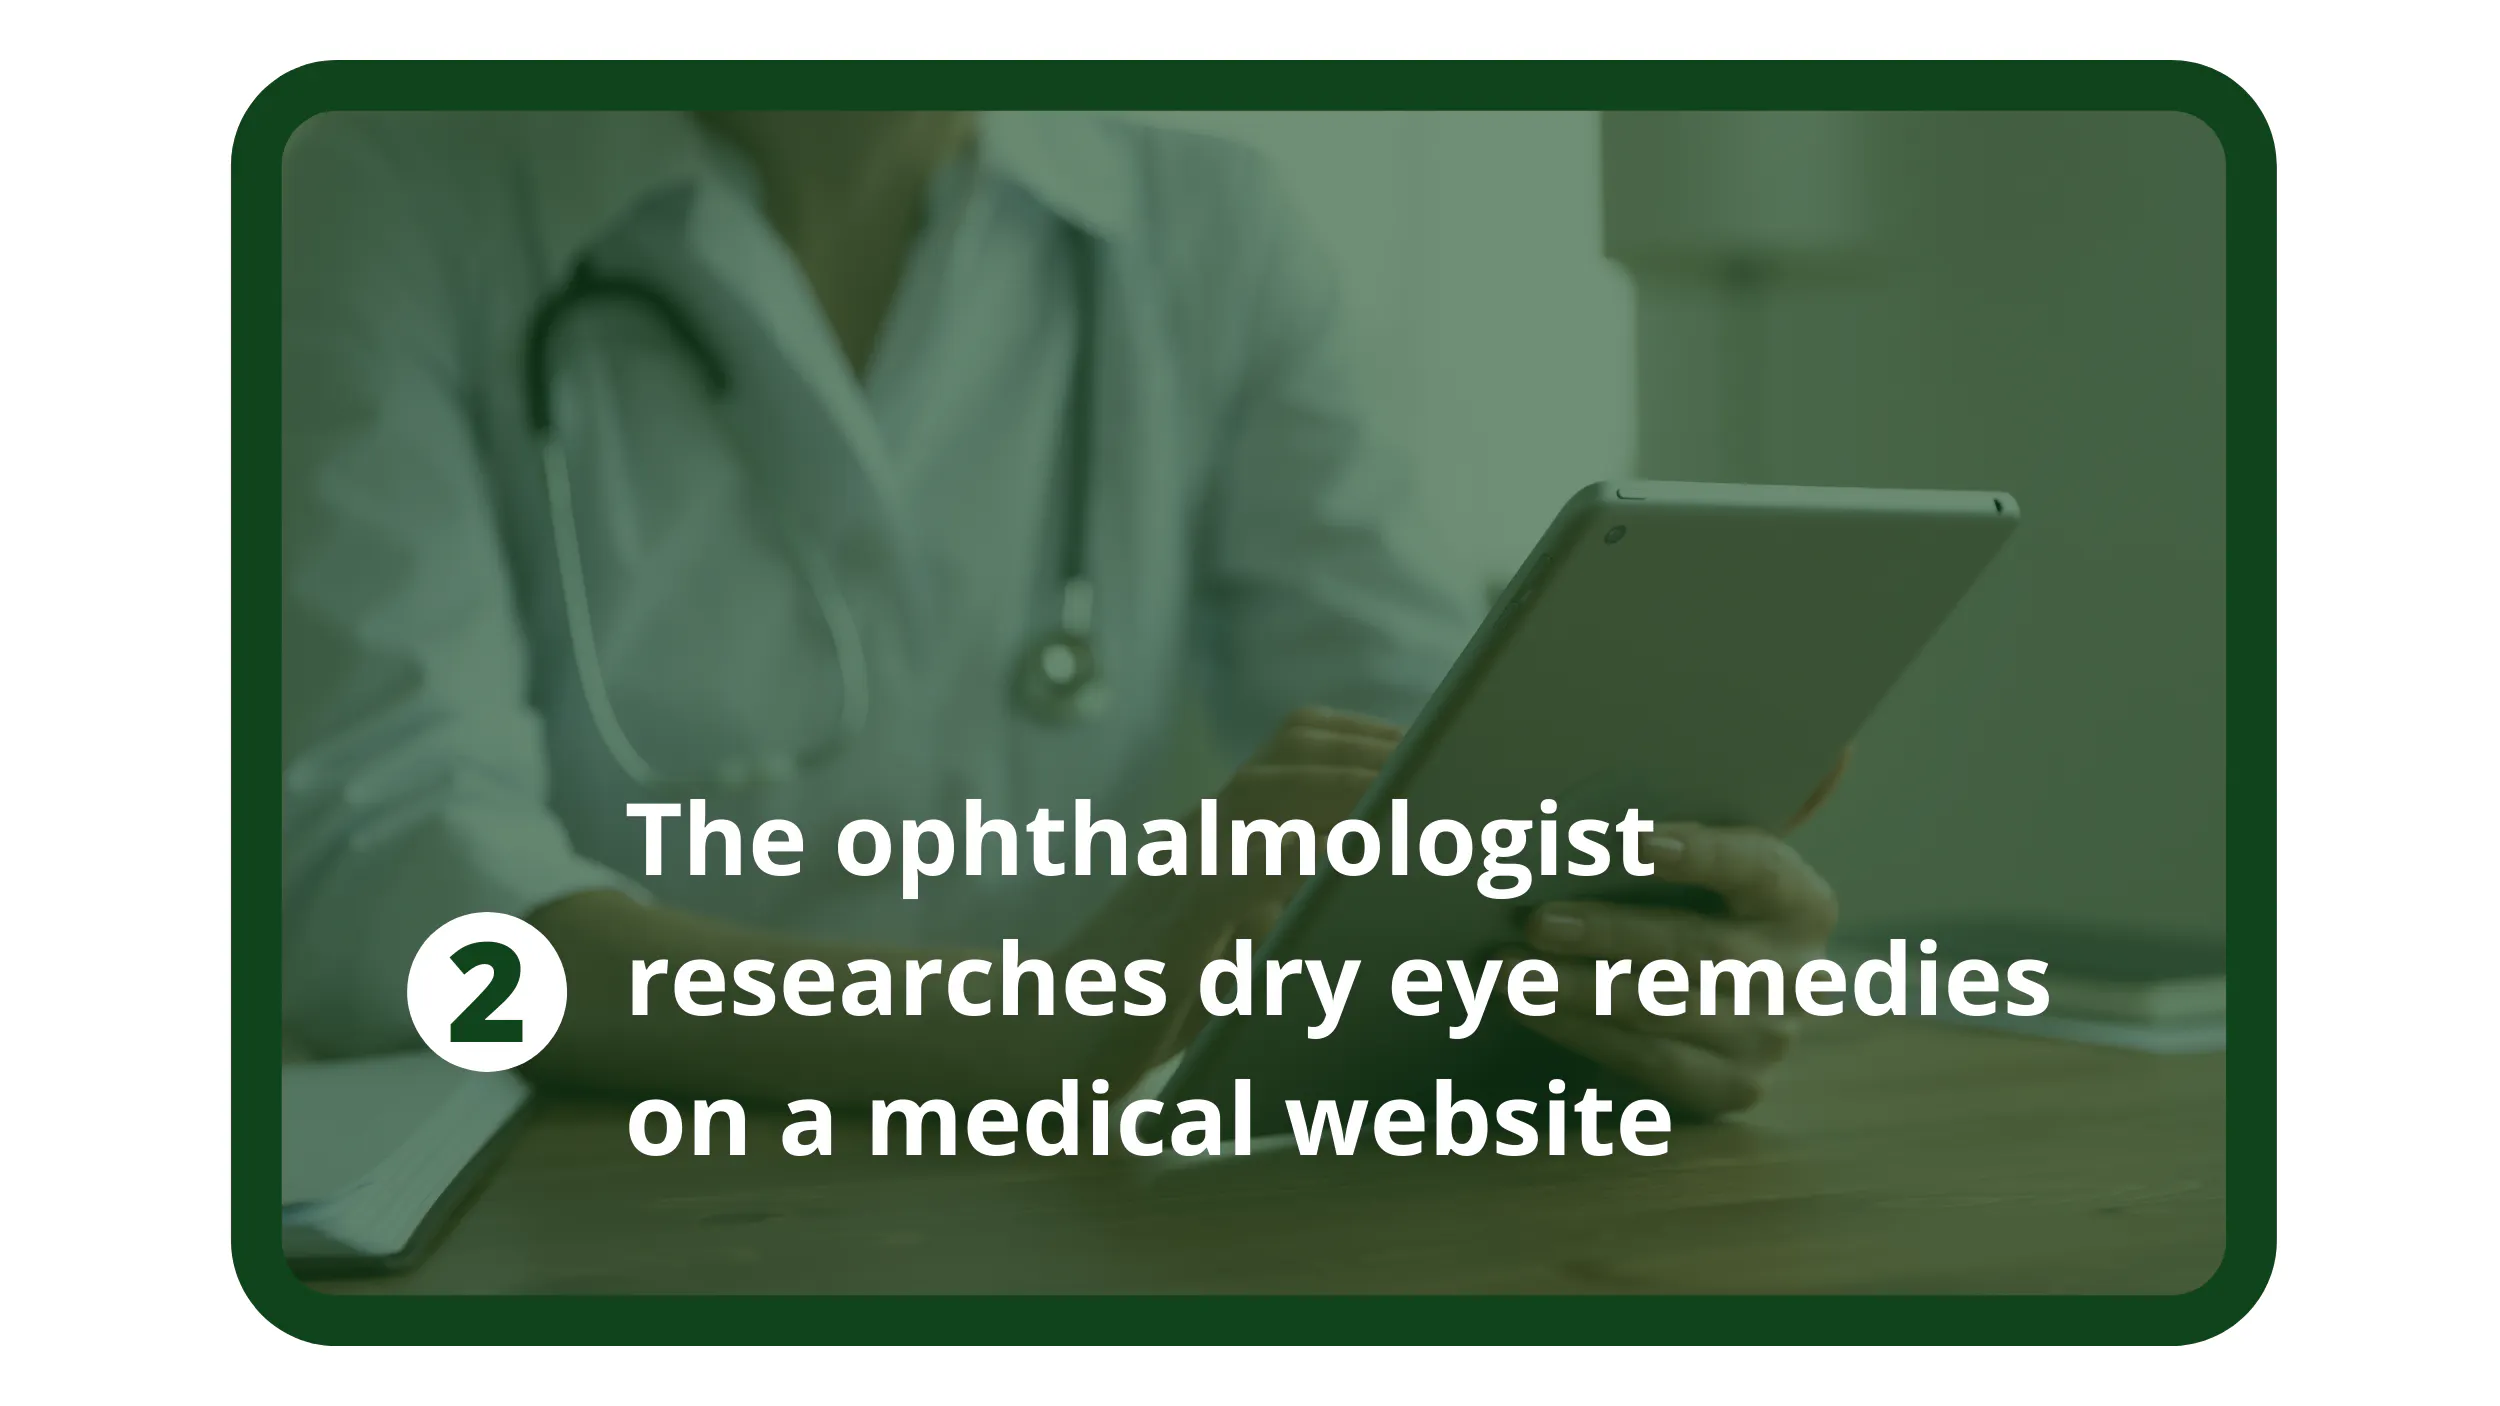 L'ophtalmologue recherche des remèdes contre la sécheresse oculaire sur un site Web médical.